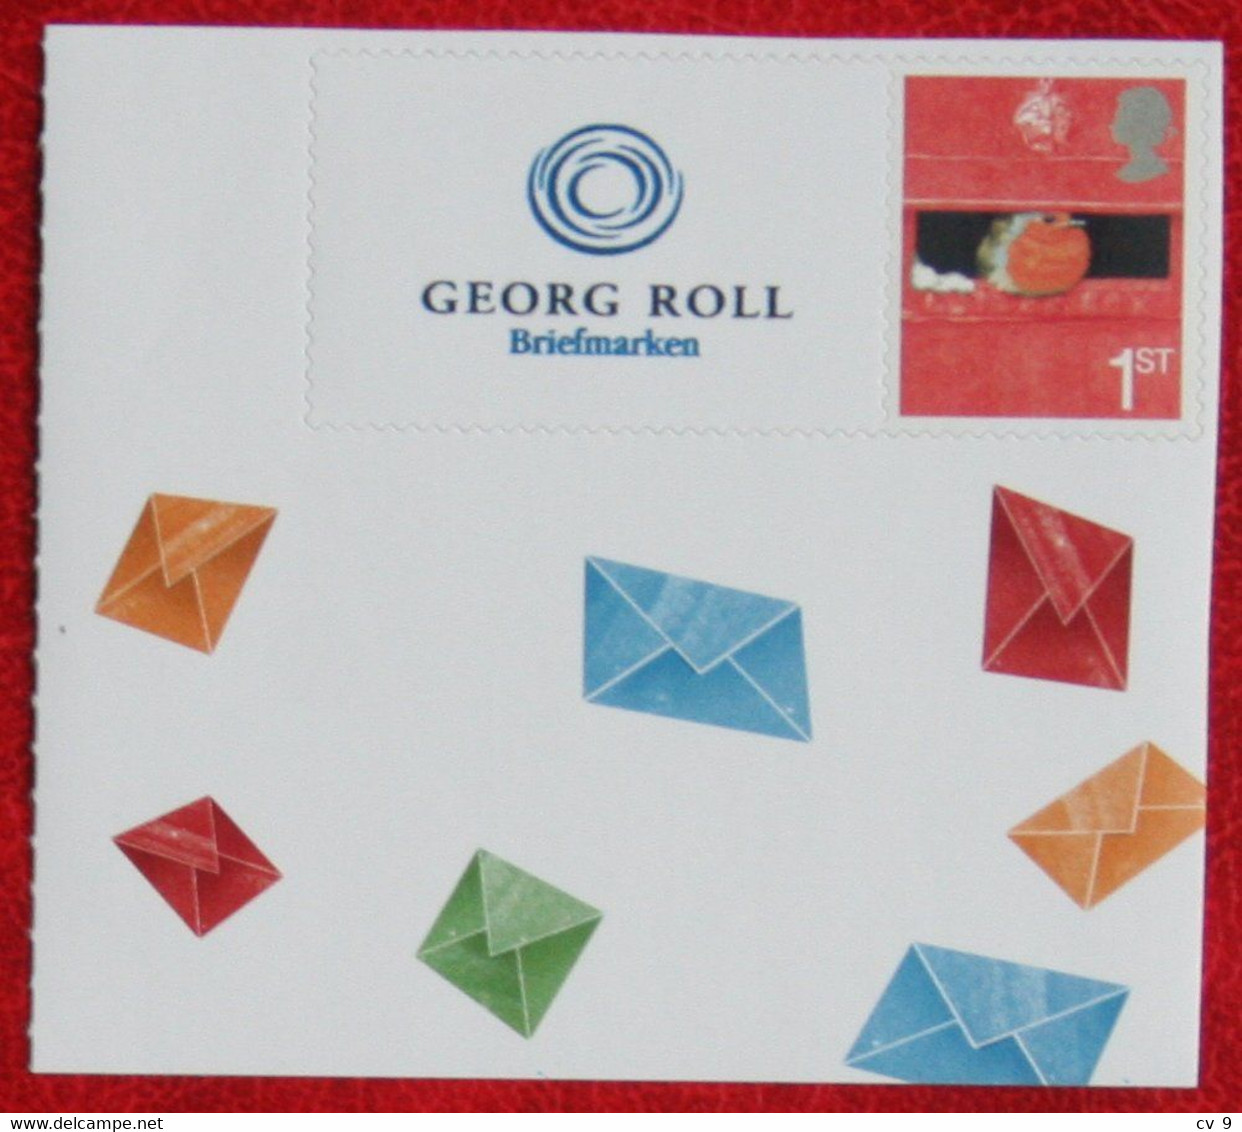 Smiler Smilers Personal Stamp Georg Roll Briefmarken ROBIN Bird POSTFRIS MNH ** ENGLAND GRANDE-BRETAGNE GB GREAT BRITAIN - Personalisierte Briefmarken